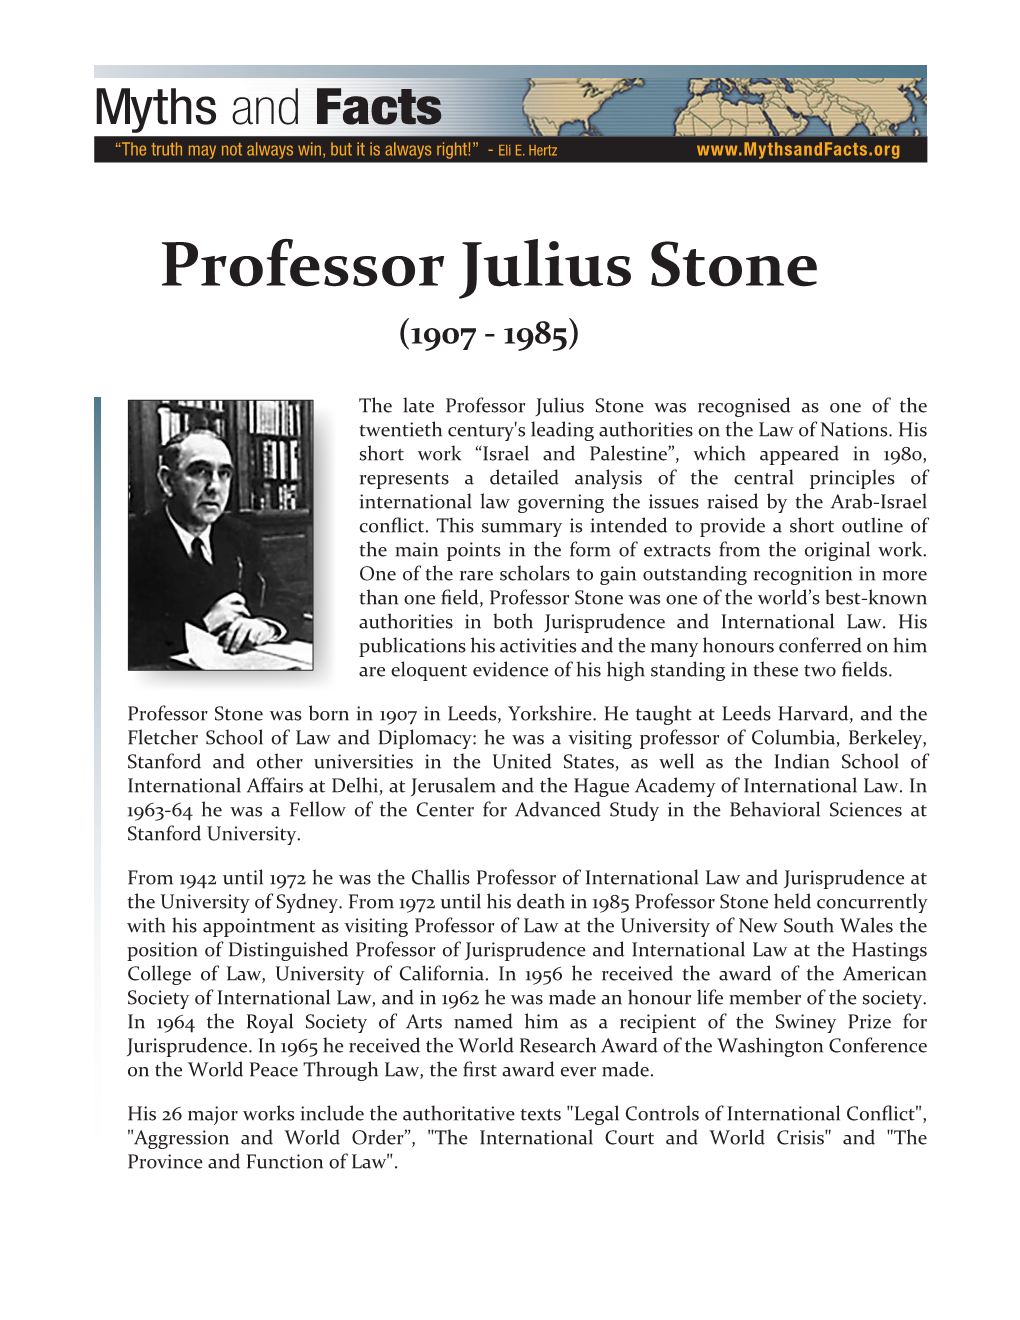 Professor Julius Stone (1907 - 1985)